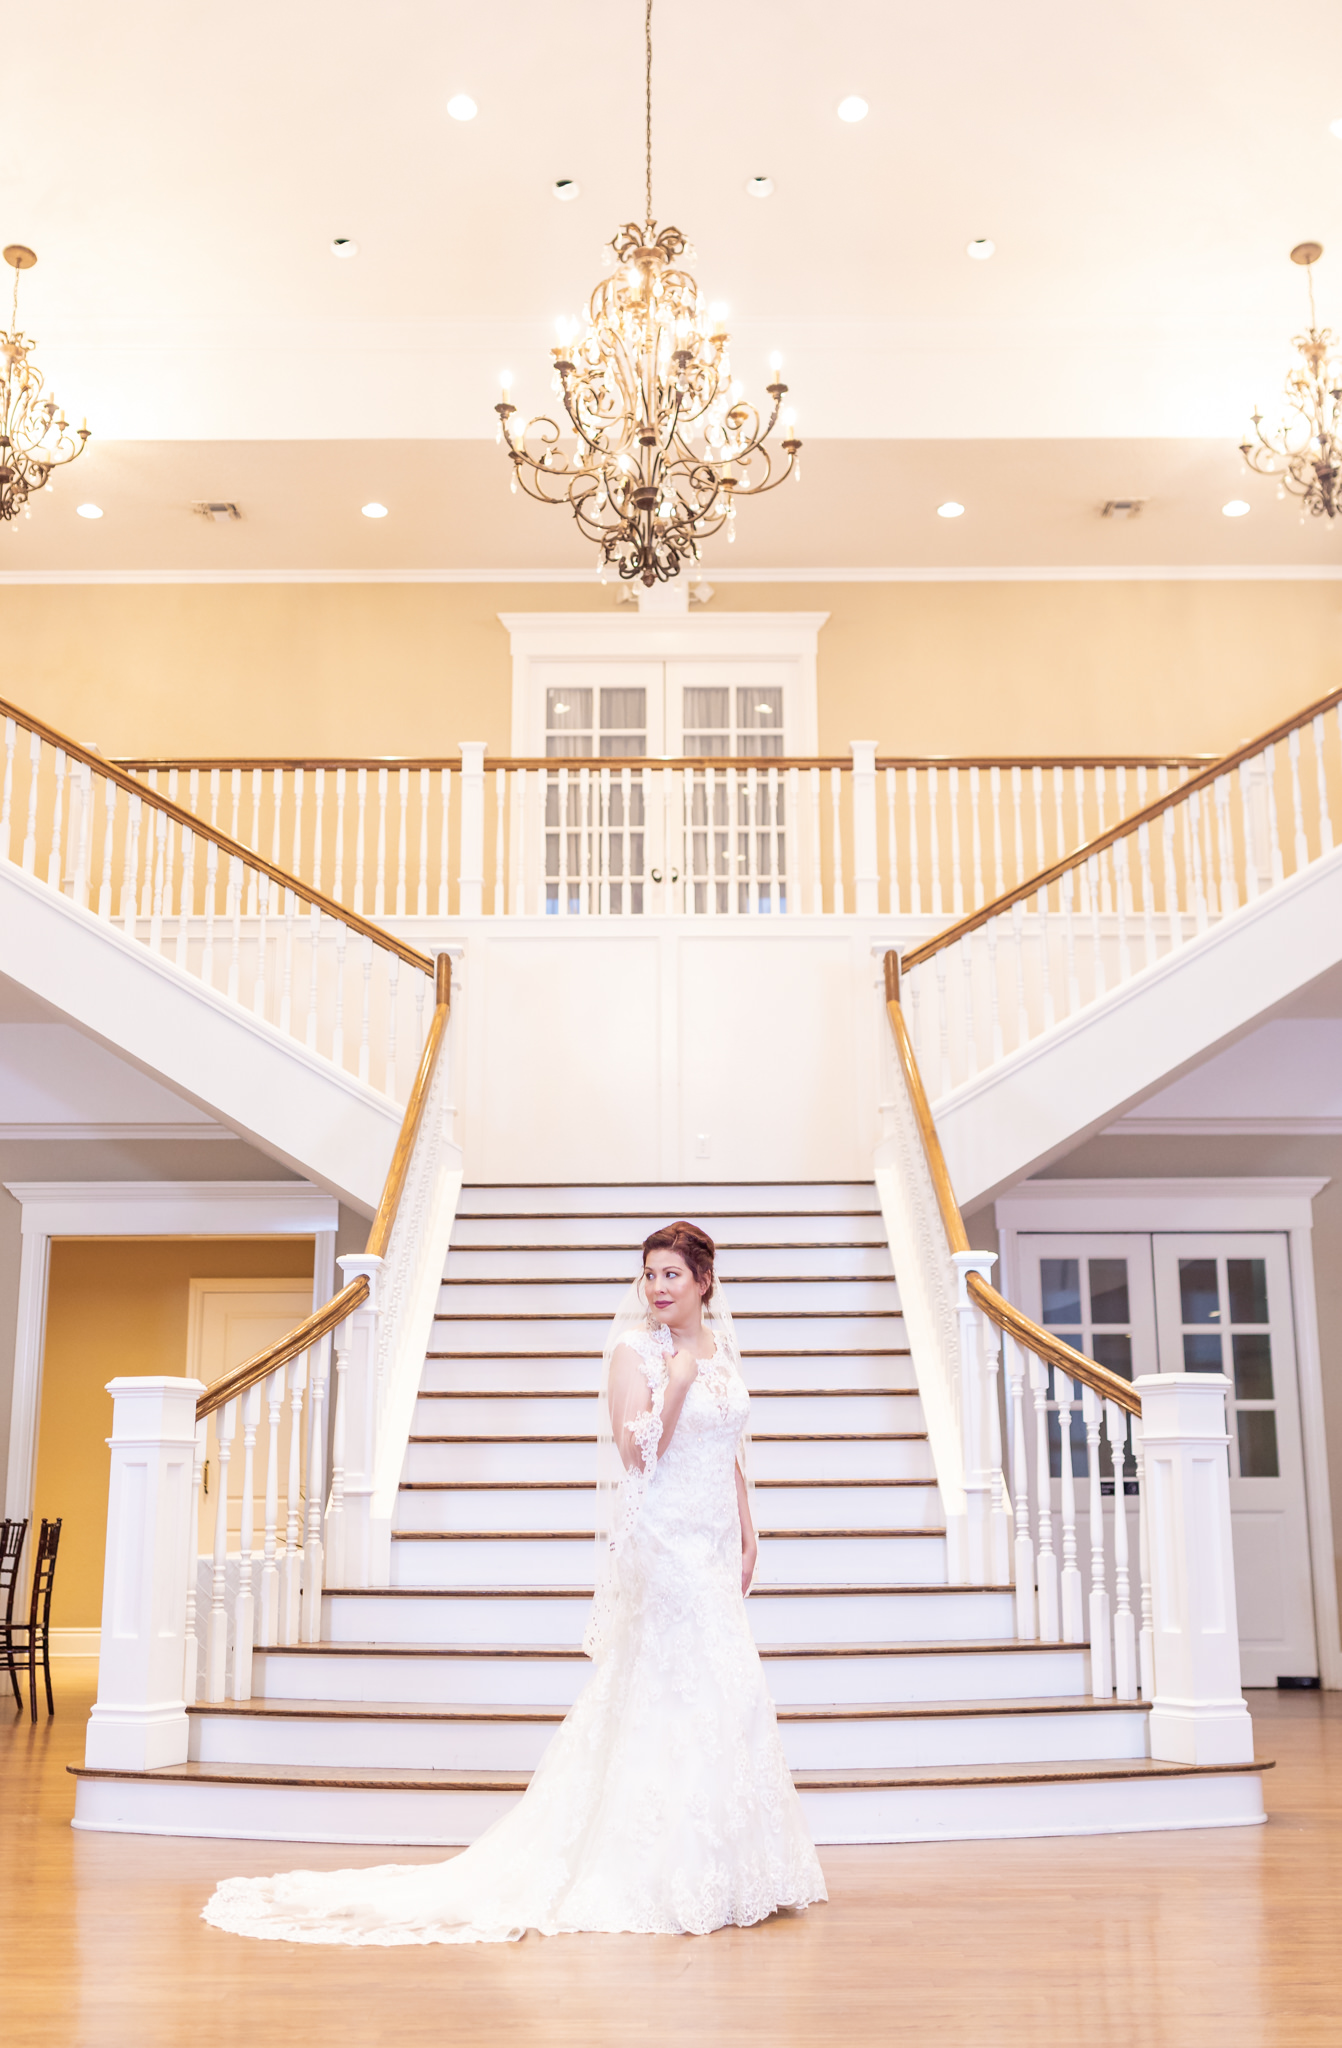 A Bridal Session at Kendall Plantation in Boerne, TX by Dawn Elizabeth Studios, San Antonio Wedding Photographer